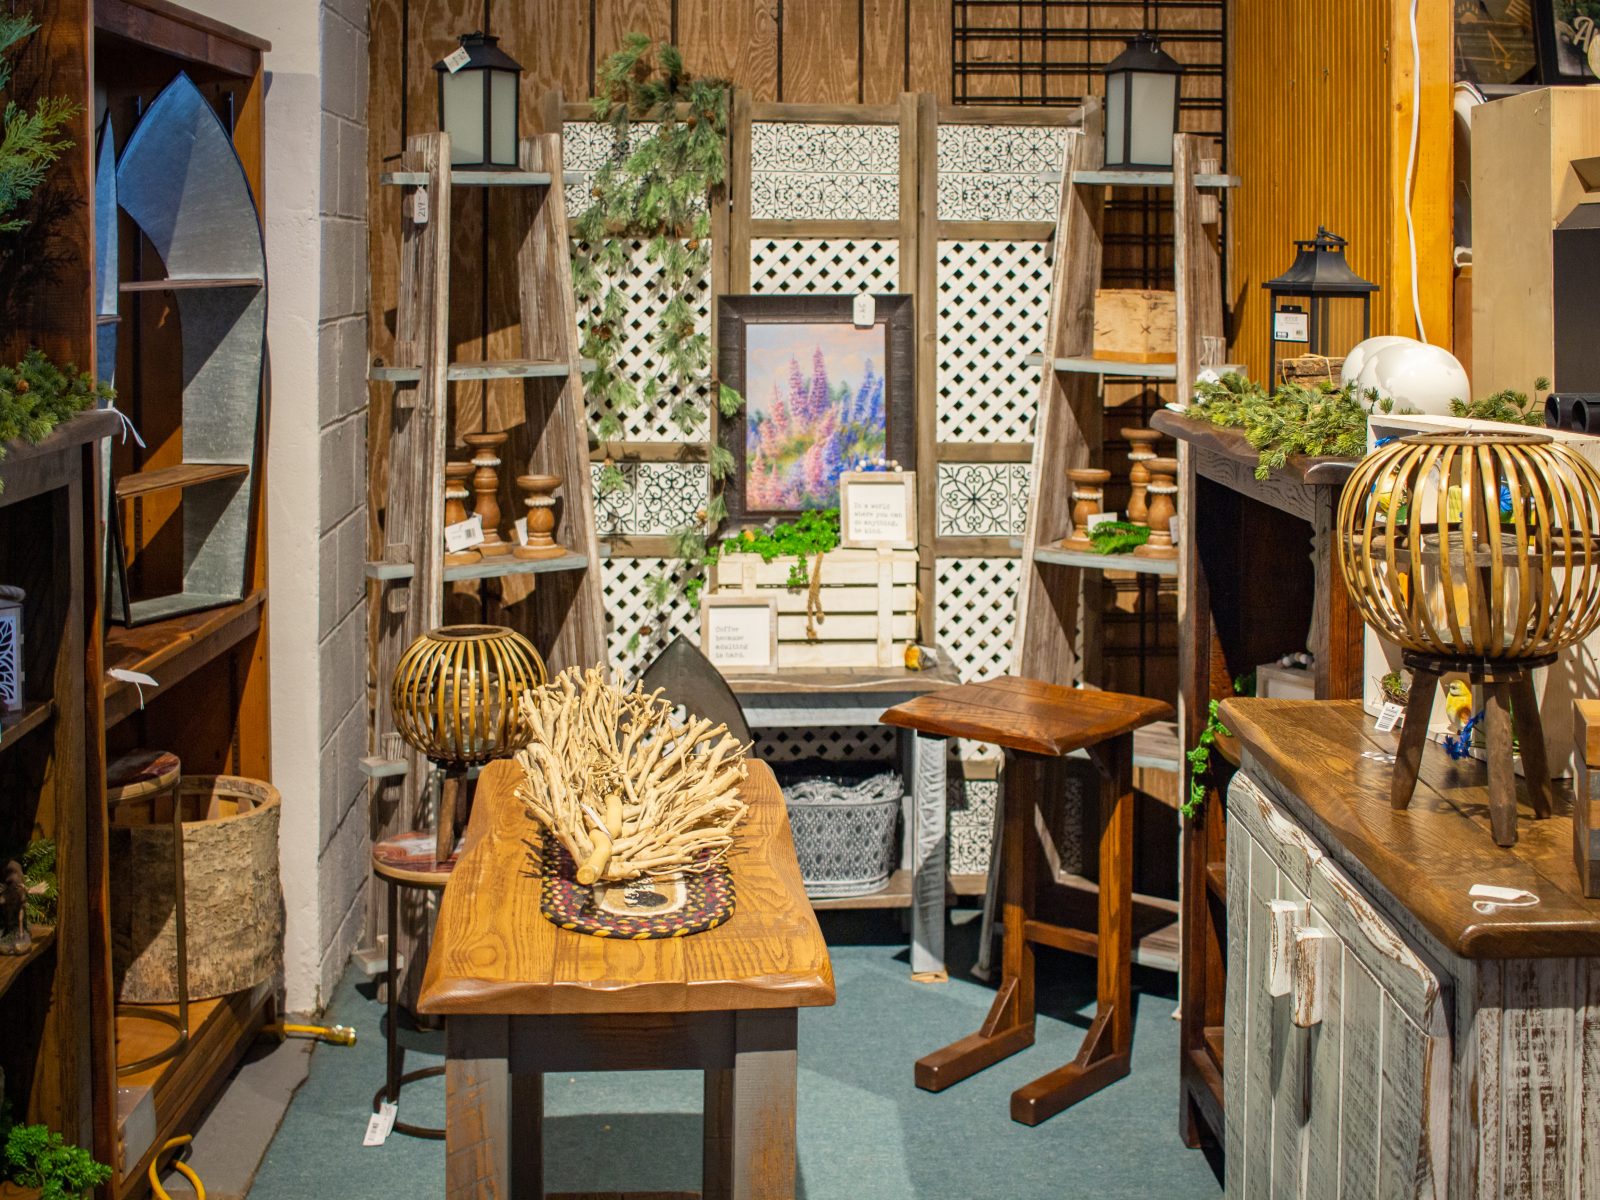 Rustic Cabin Decor, Furniture And More